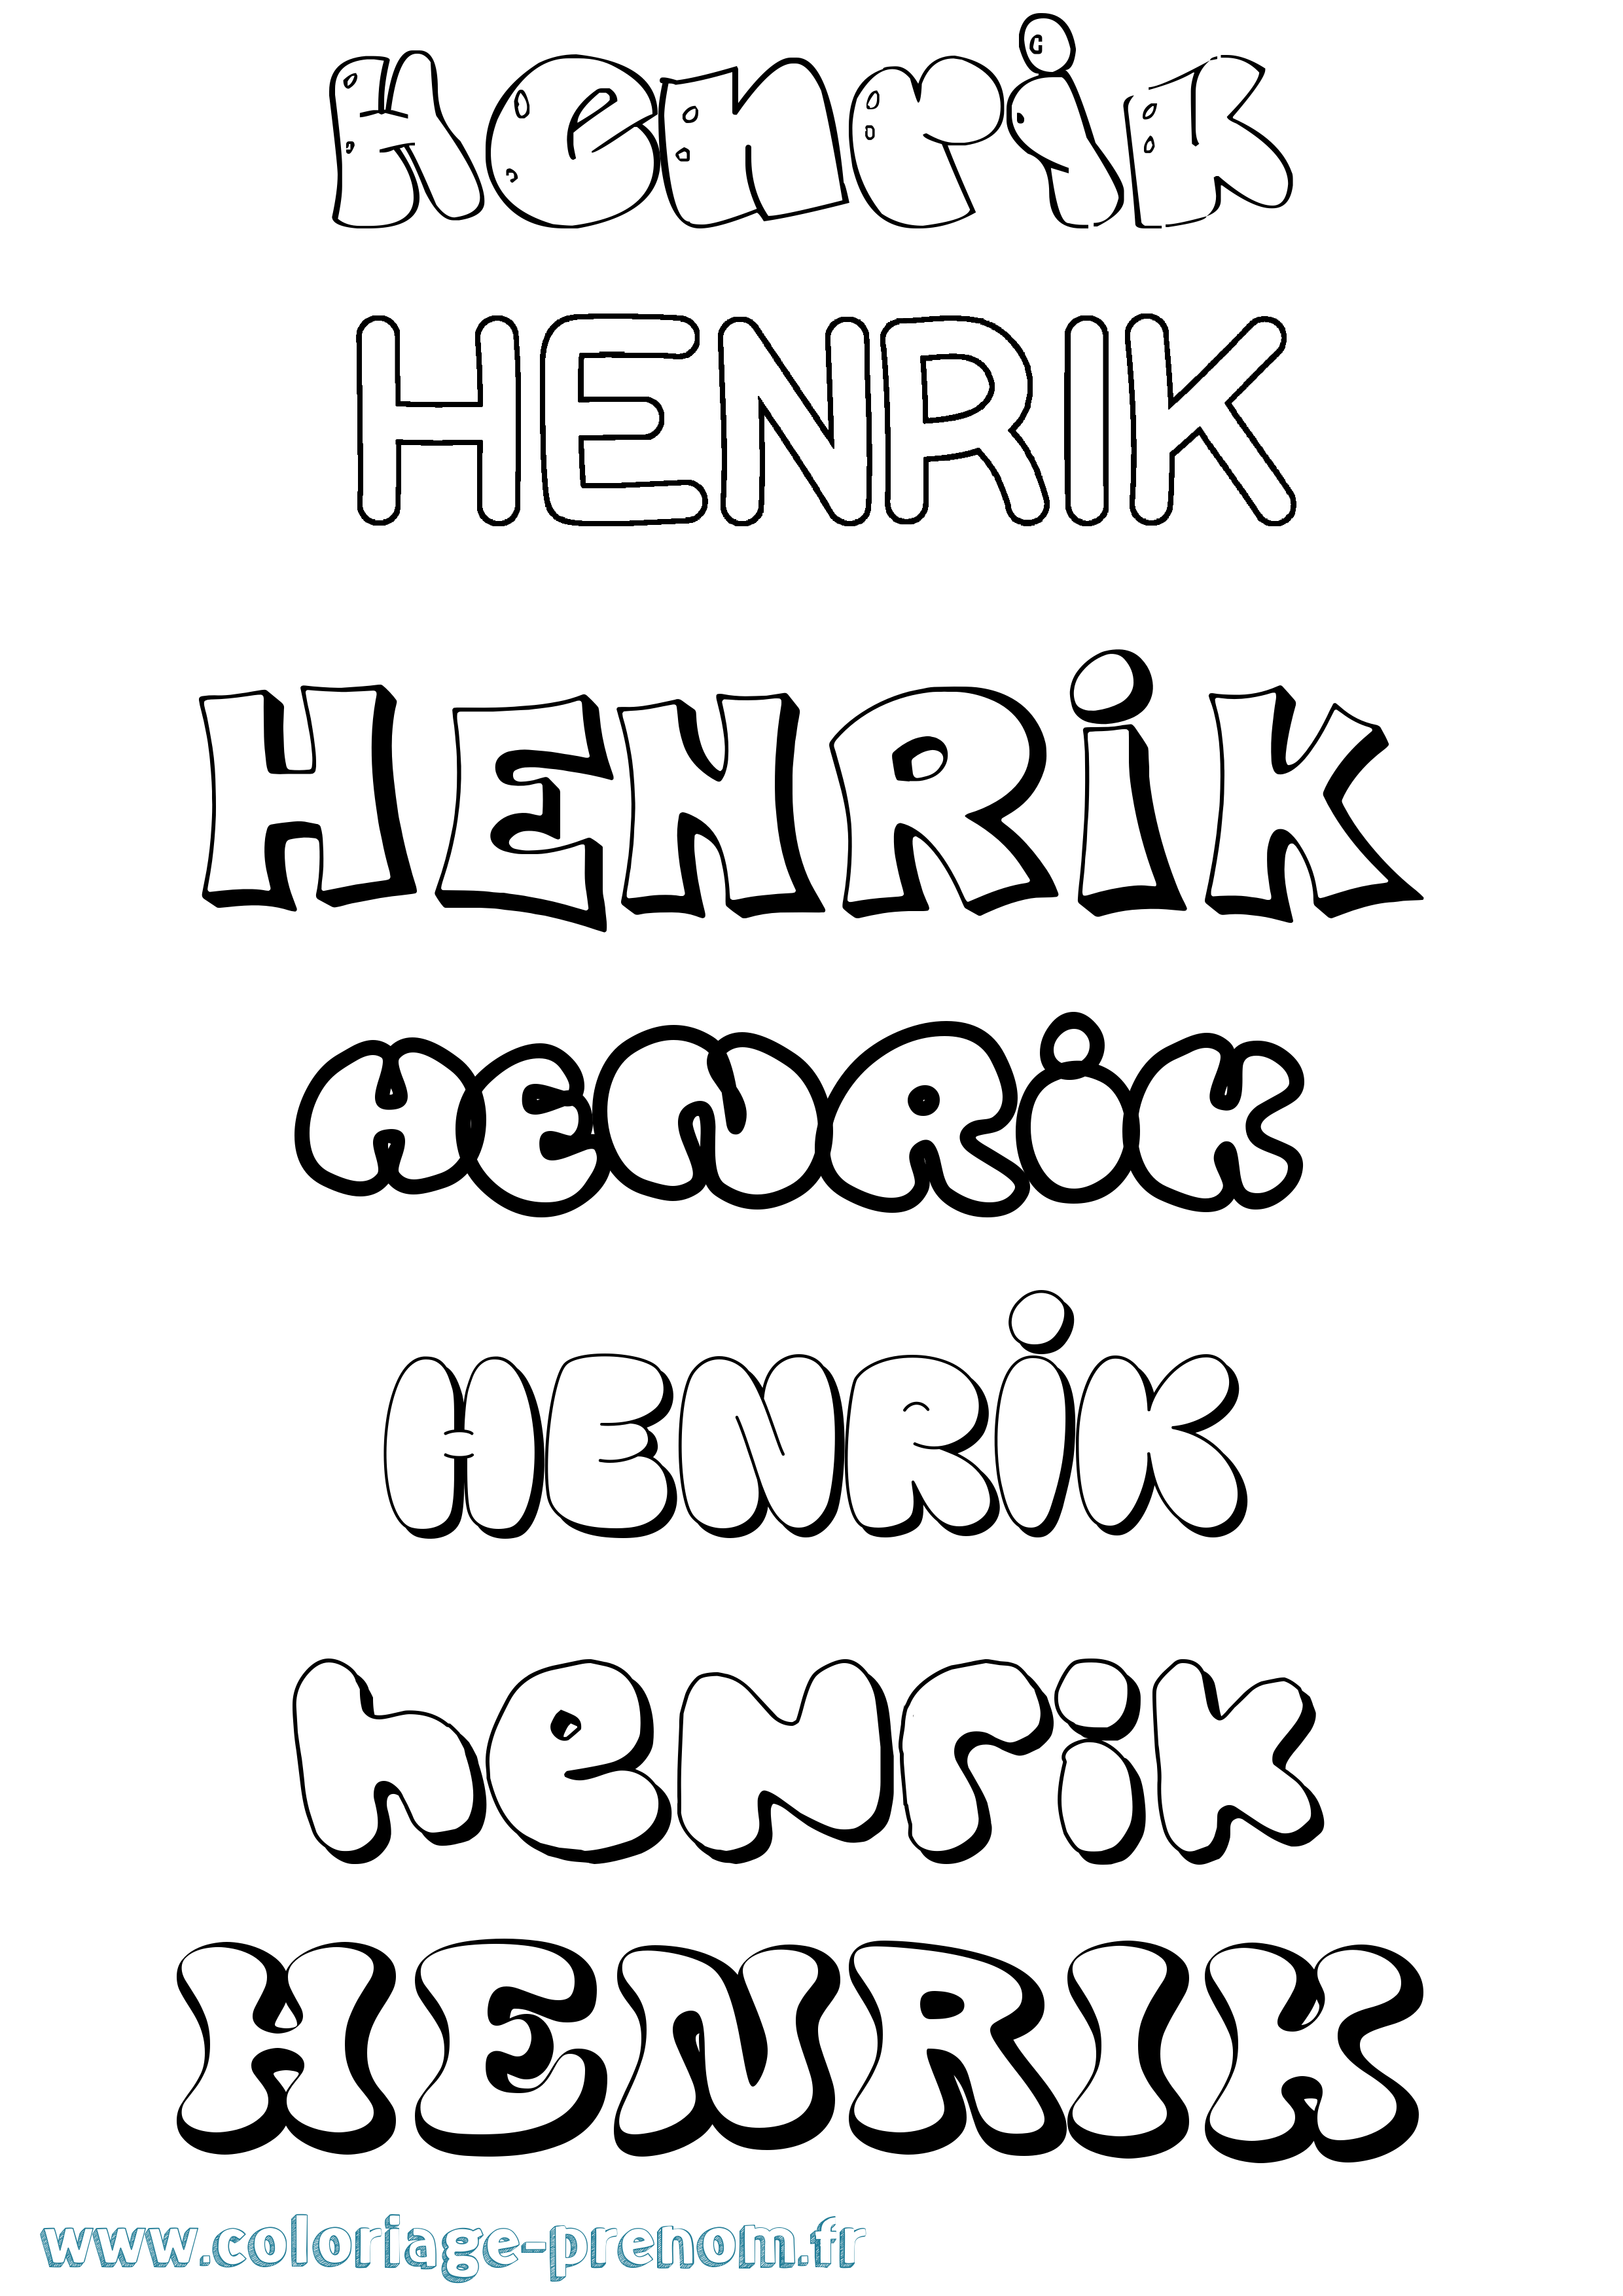 Coloriage prénom Henrik Bubble